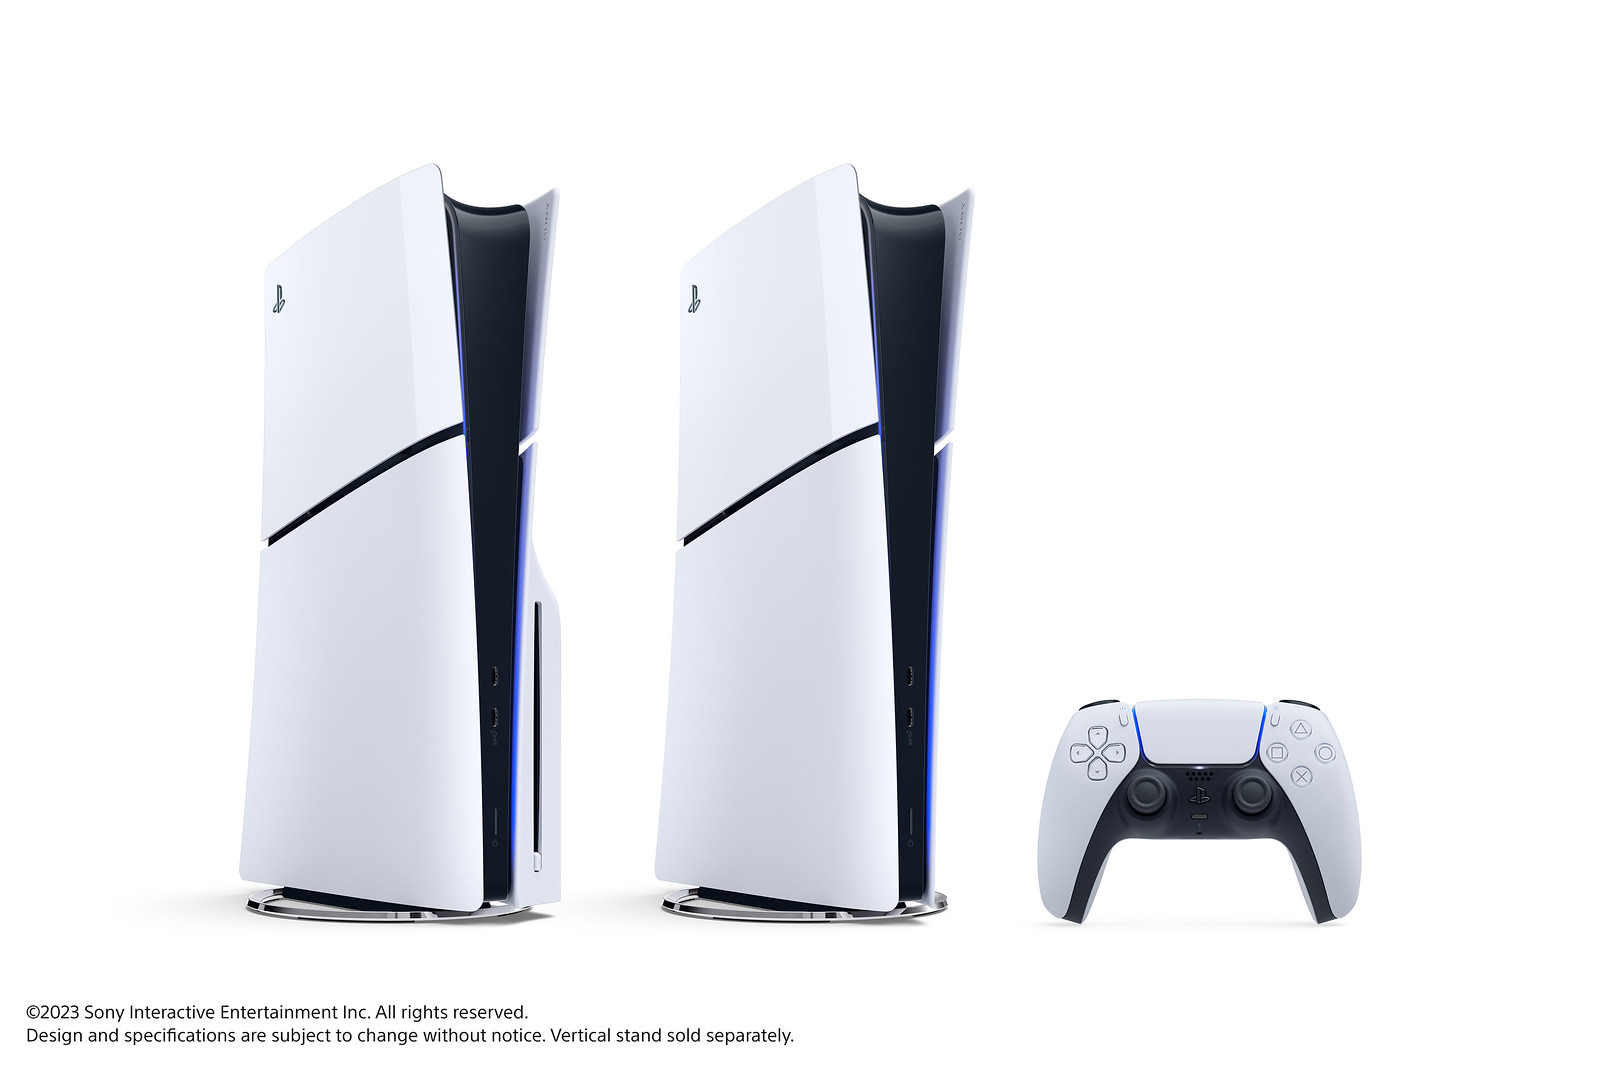 #Sony präsentiert neue Slim-Varianten von PlayStation 5 und sagt „Digital Only“ ade